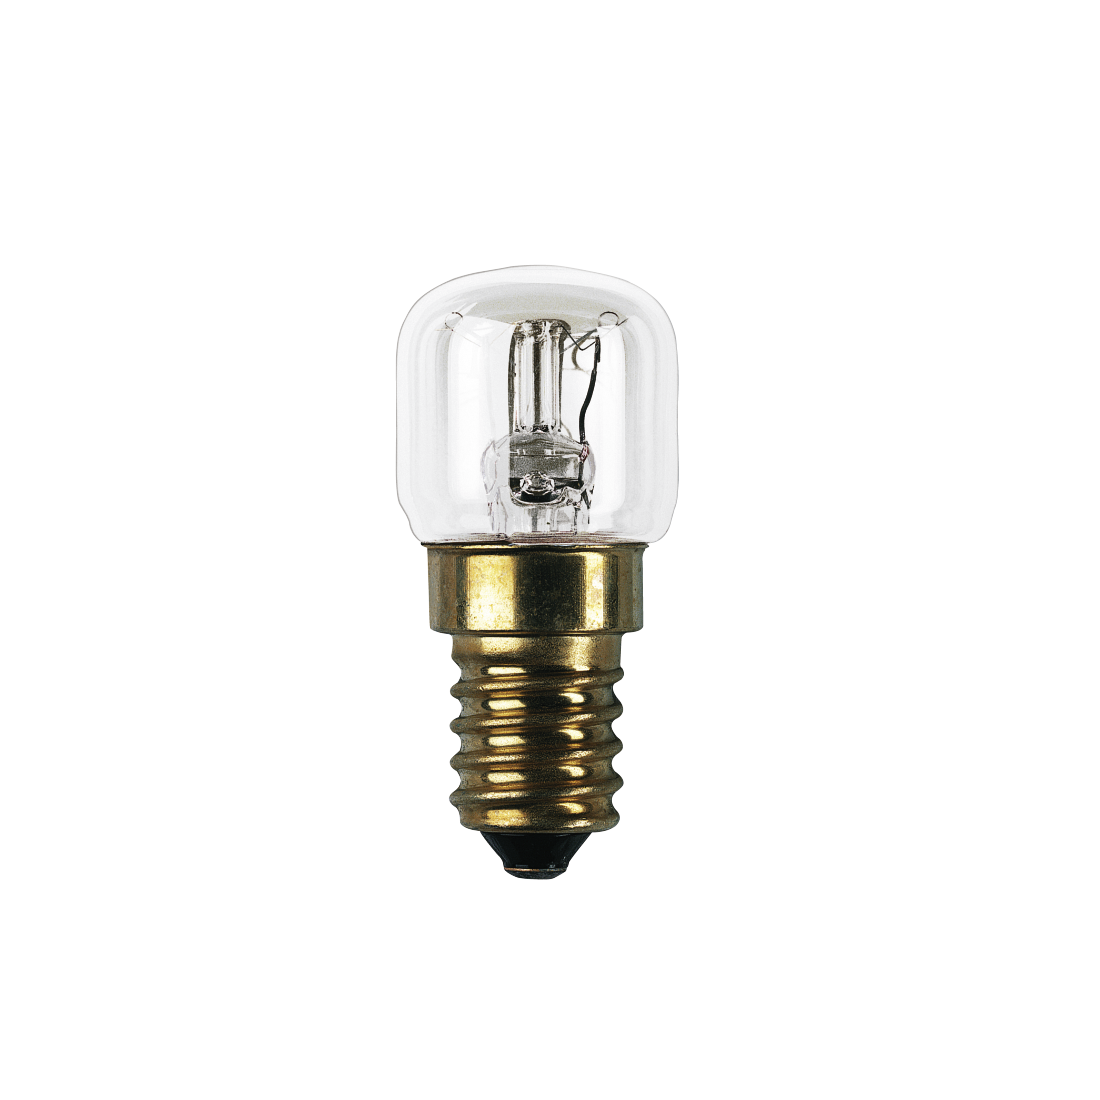 abx High-Res Image - Xavax, Lampe de four, 15 W, 300°, E14, forme ampoule, transparente